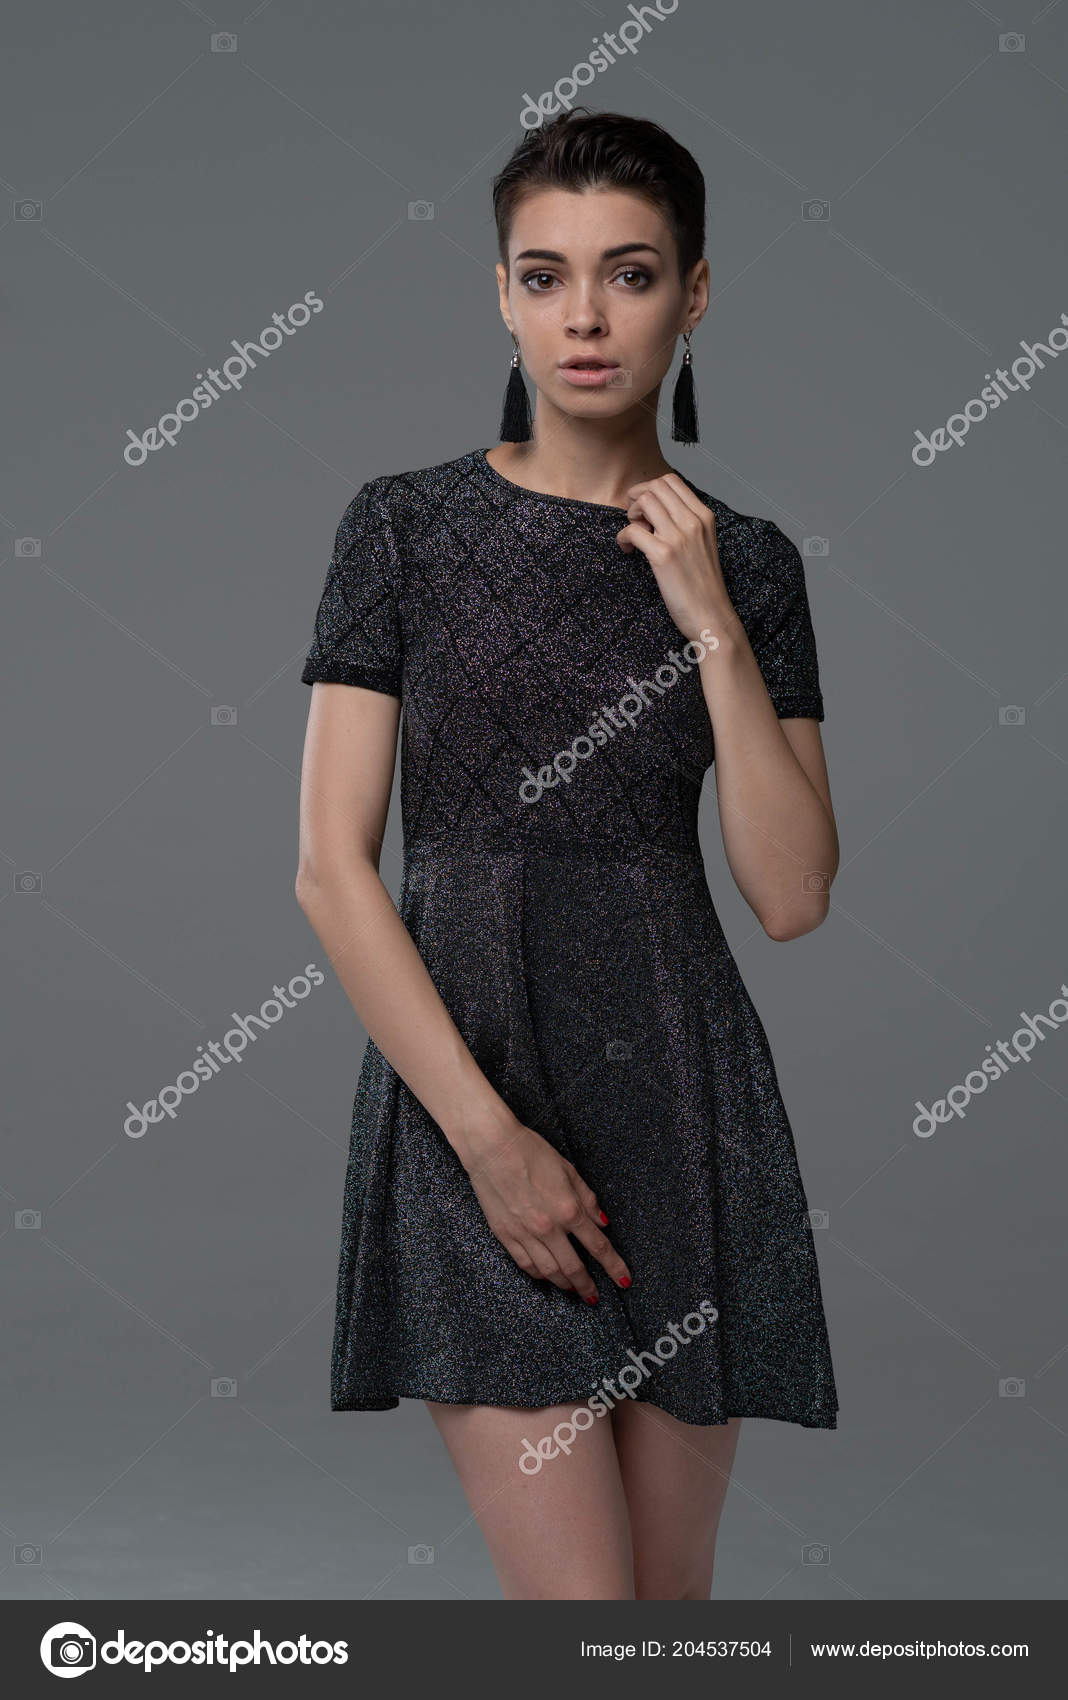 https://st4.depositphotos.com/10086424/20453/i/1600/depositphotos_204537504-stock-photo-young-beautiful-girl-posing-studio.jpg